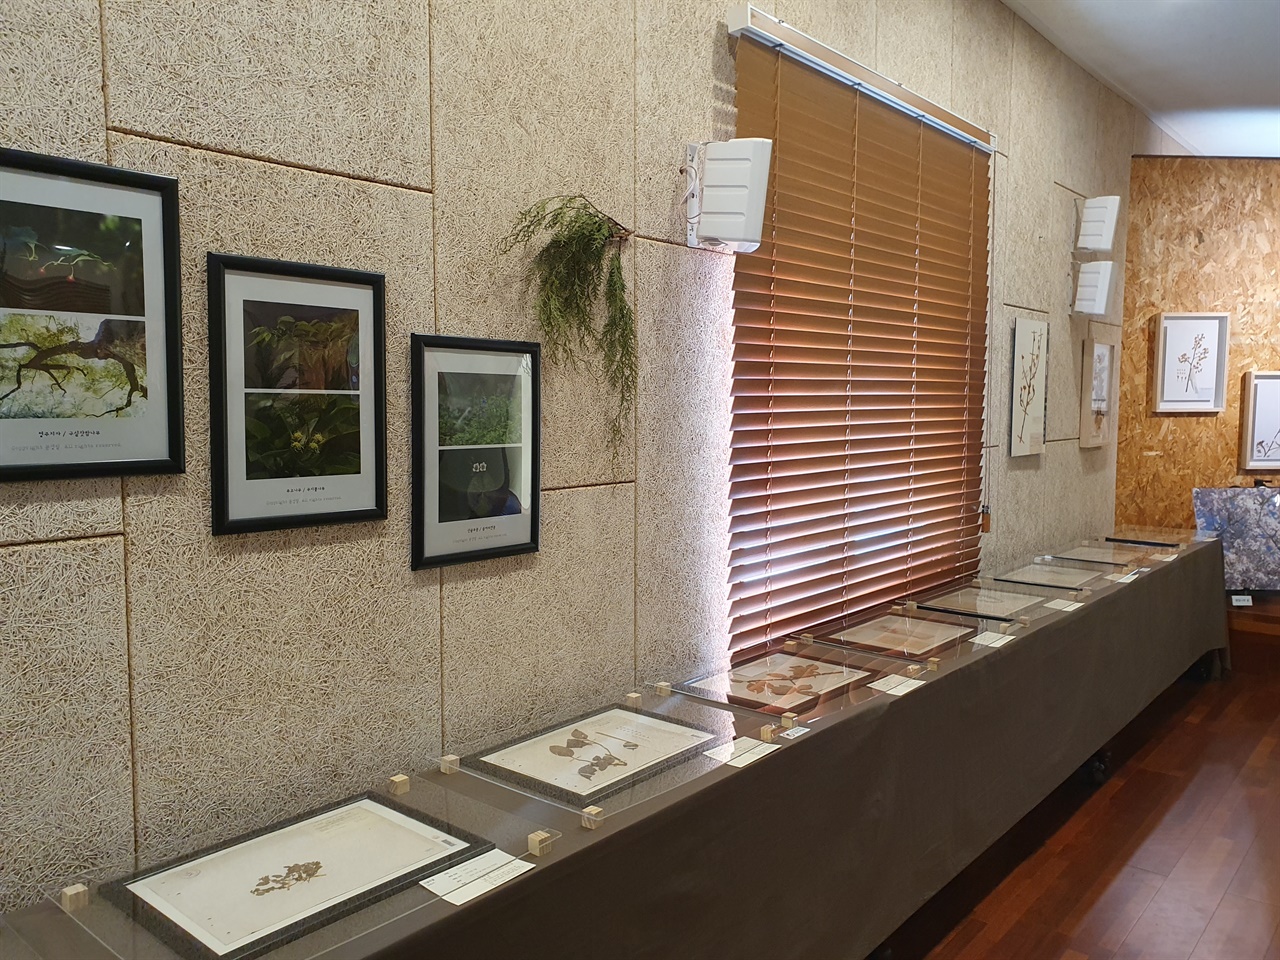 면형의 집 3층에서 10월 1일부터 11월 30일까지 열리는 전시회에서는 타케 신부가 채집한 식물표본 30여 점과 왕벚나무 구상나무 관련 사진과 영상을 공개하고 있다.